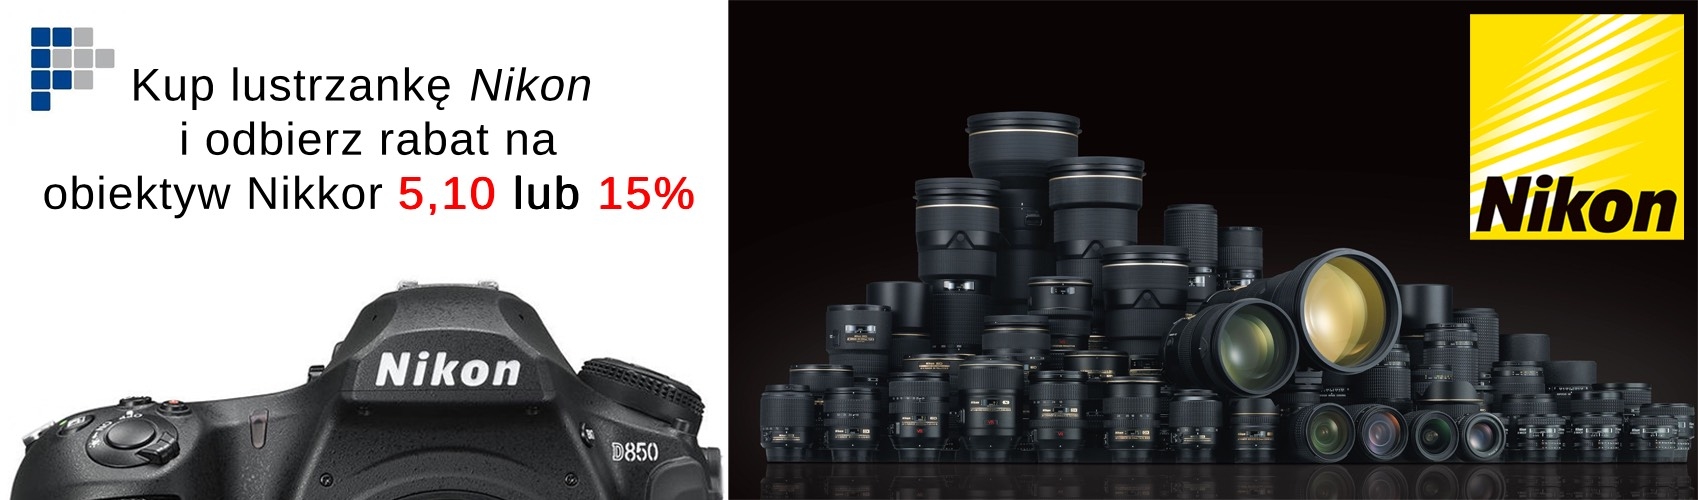 Kup lustrzankę Nikon i odbierz rabat na obiektyw Nikkor F 5, 10 lub nawet 15 % !